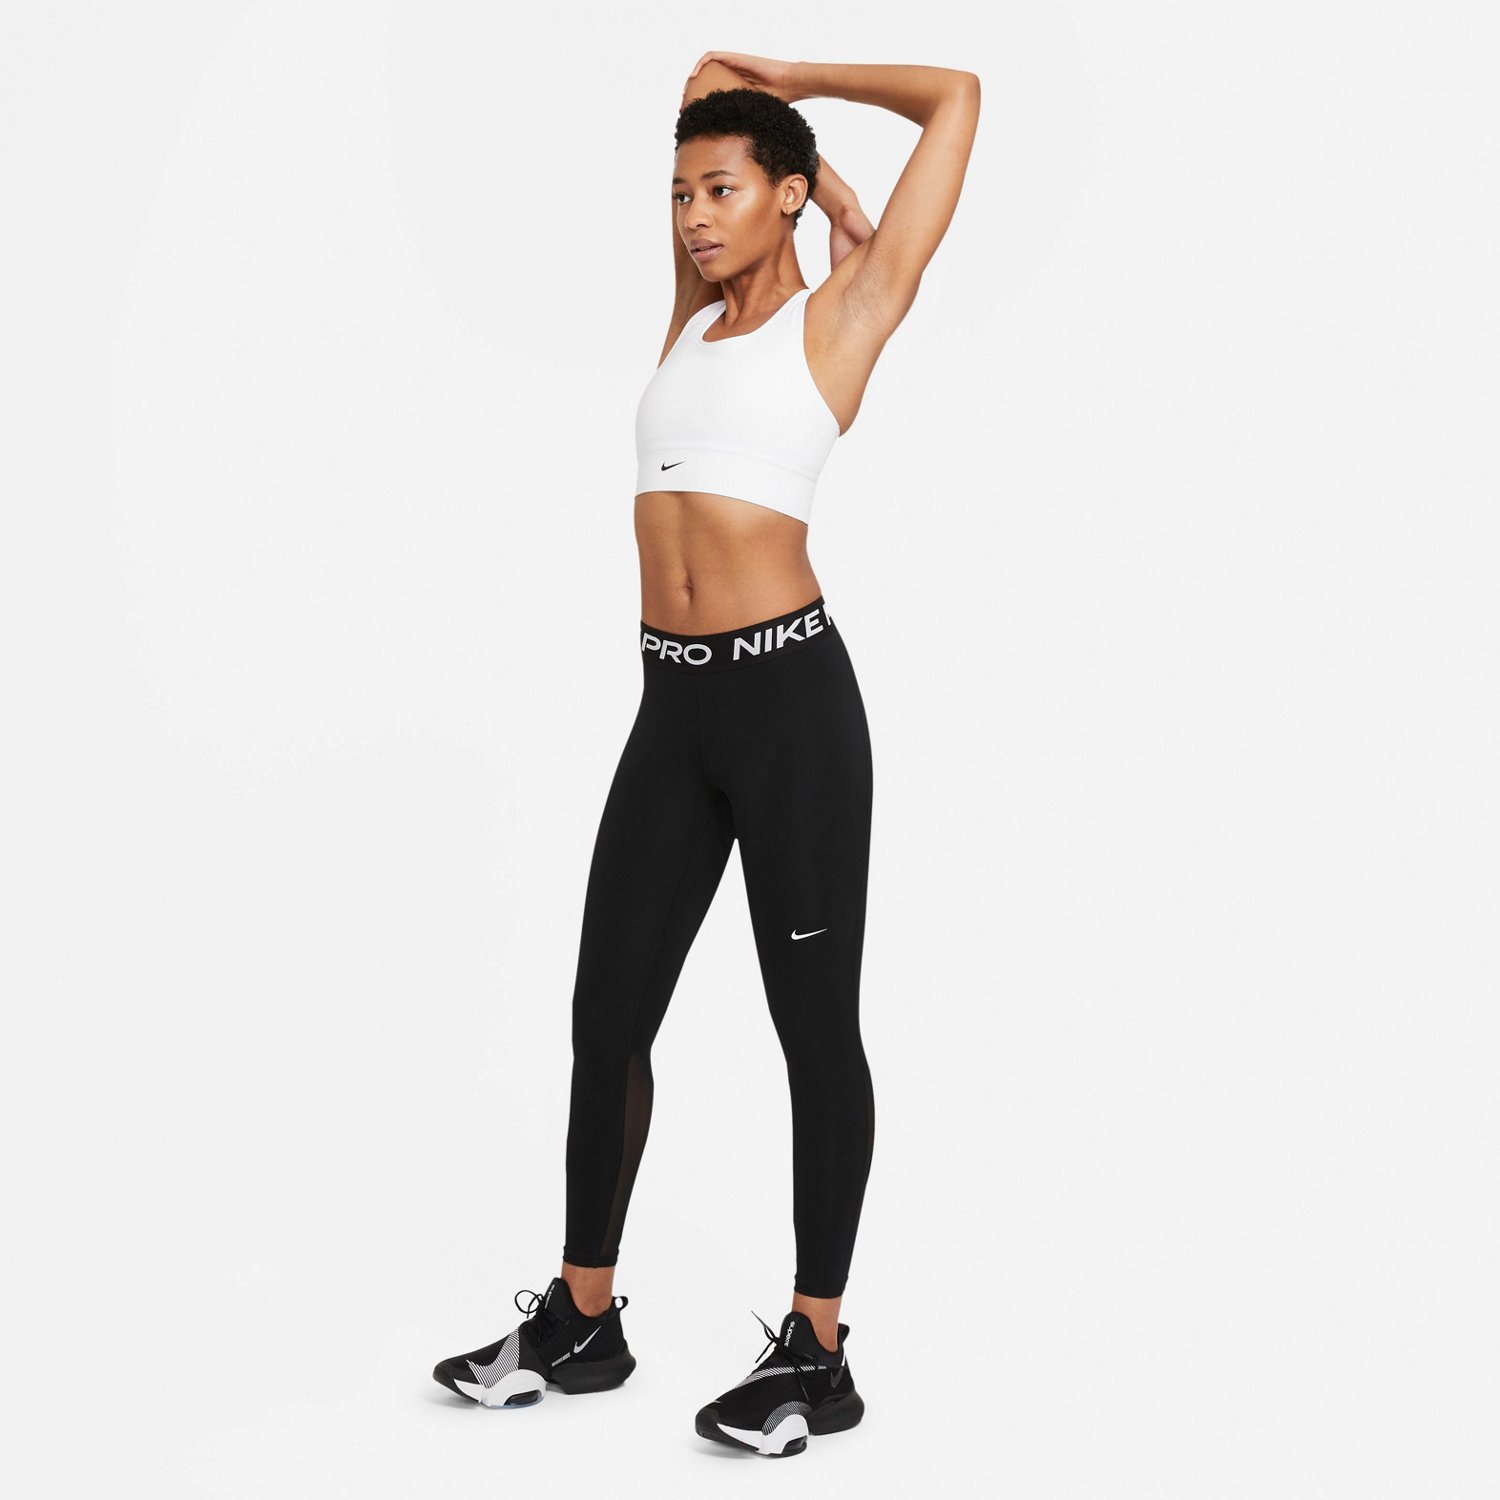 regeren Verhuizer regeling Nike Women'sPro 365 Tights | Academy